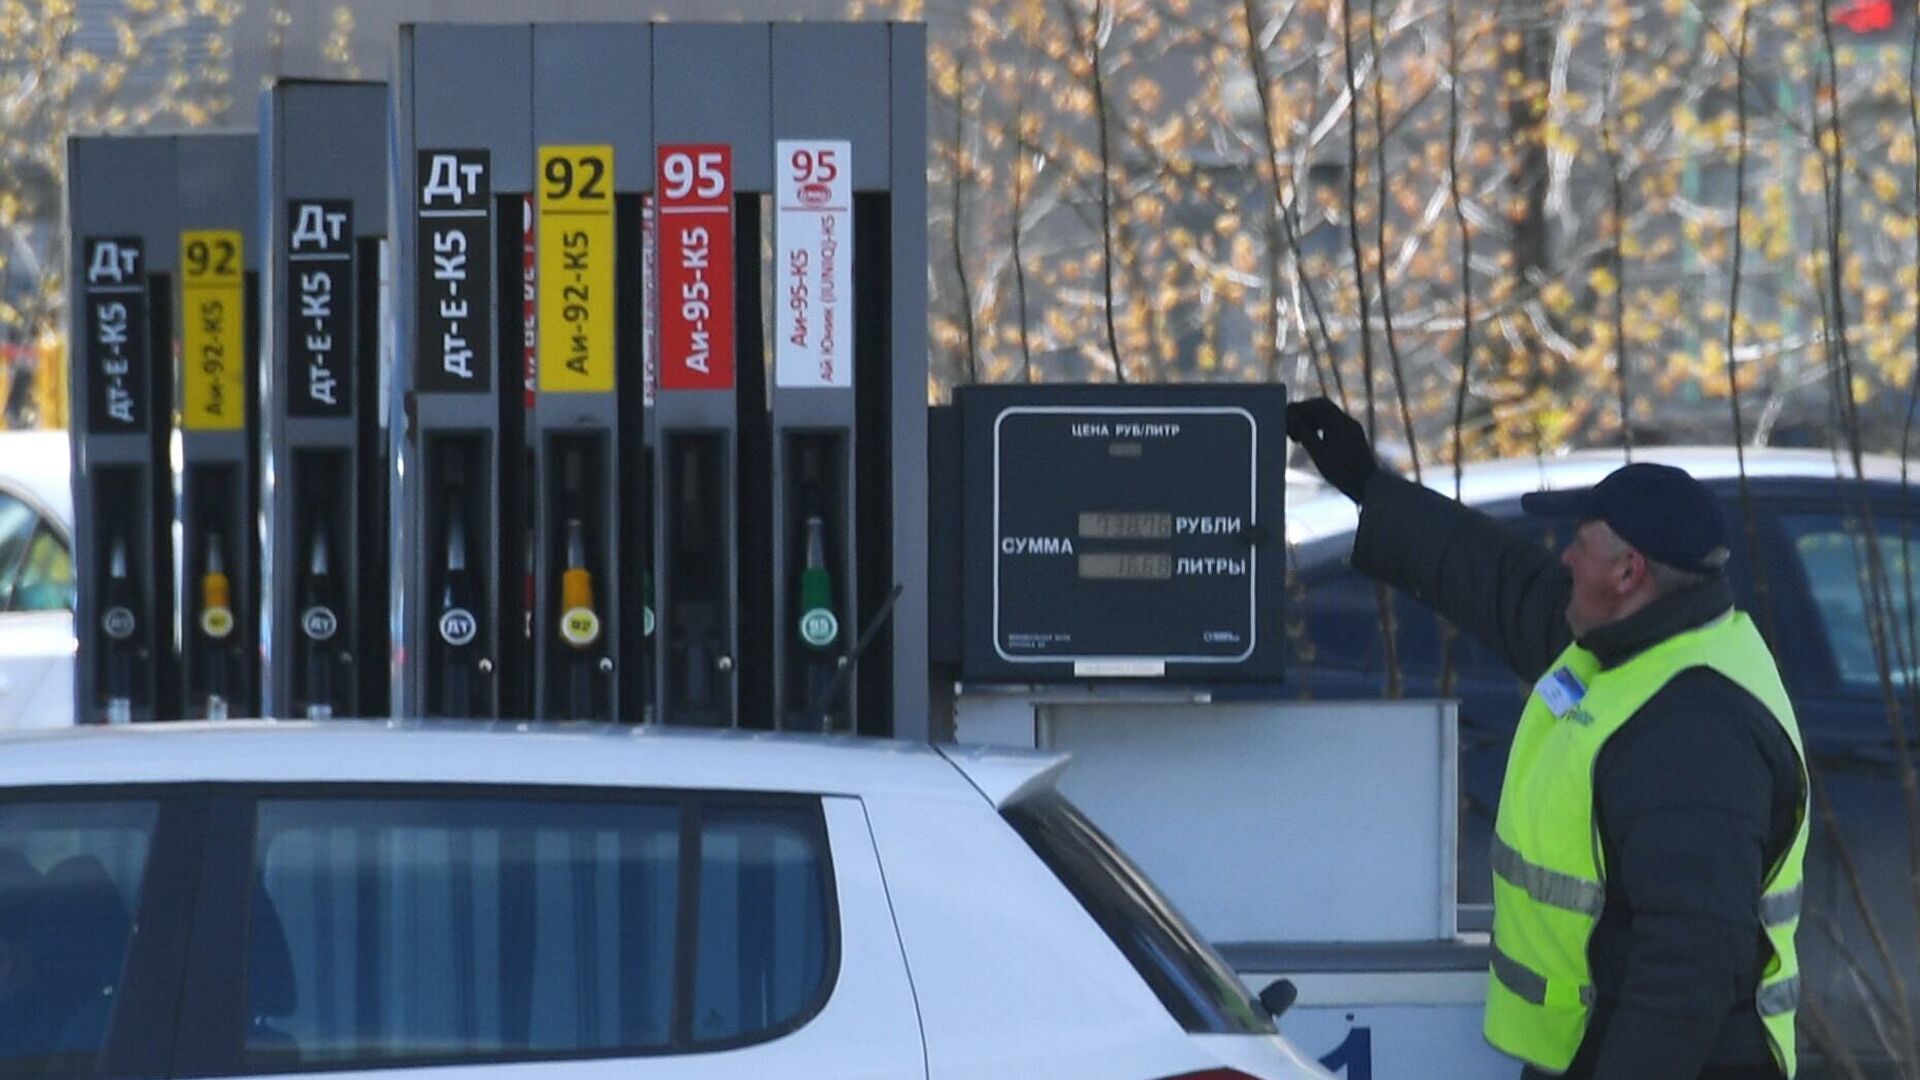 Сколько стоит бензин в испании?